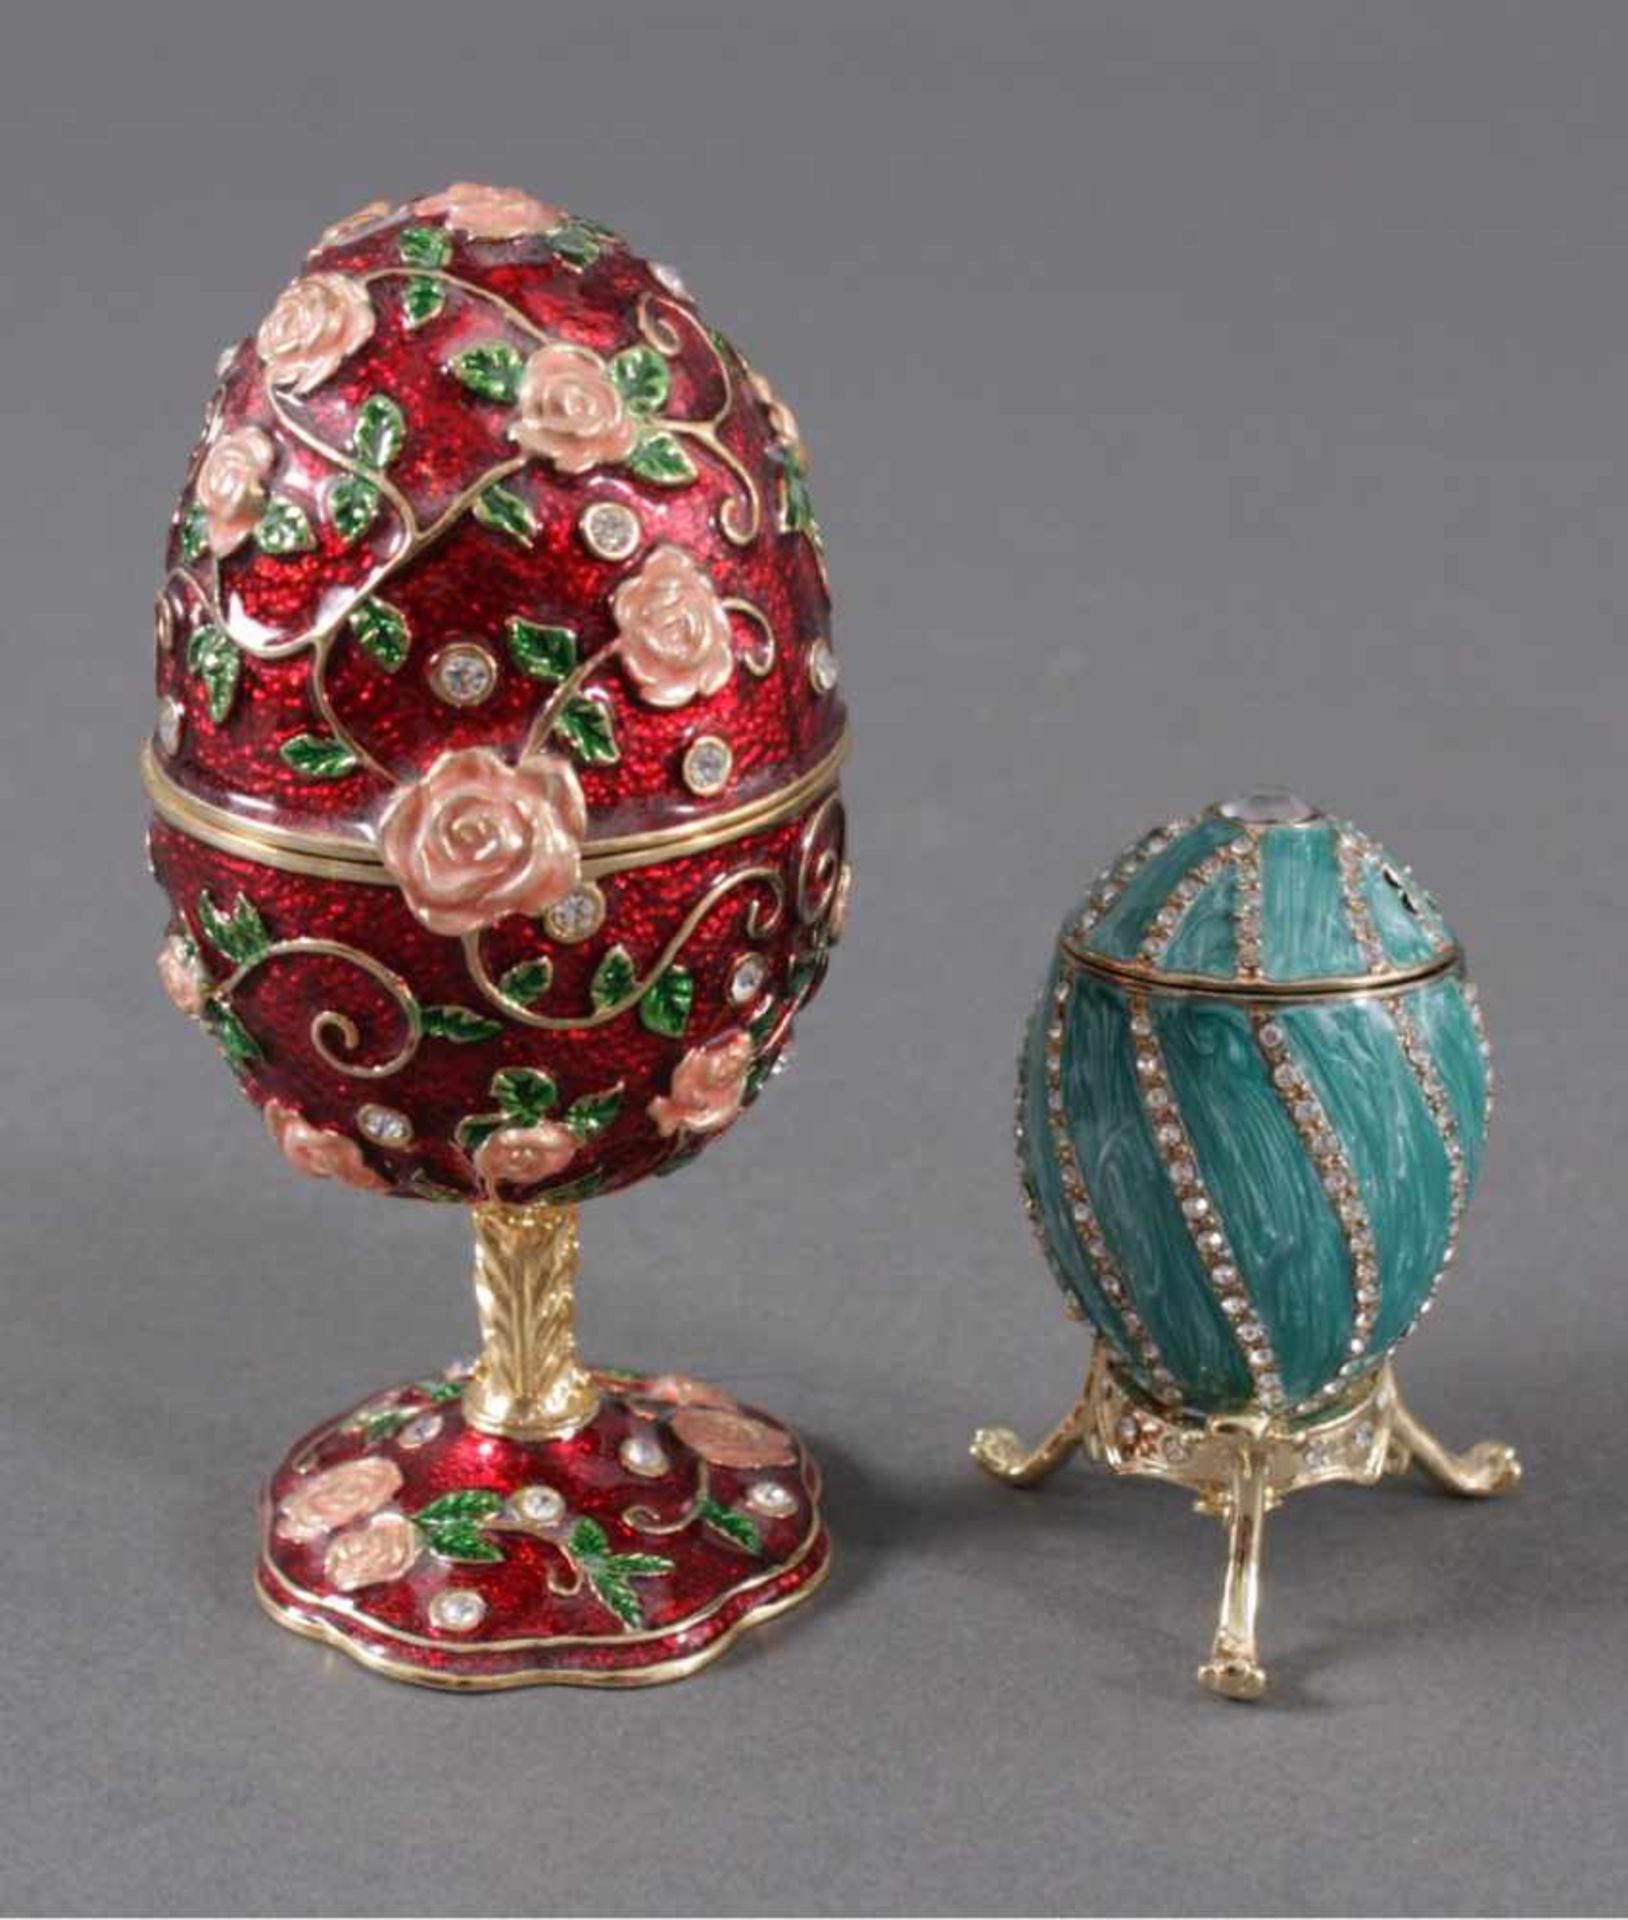 Zwei Schmuck/-Spieluhr-EierIm Fabergé-Stil. Ei und Standfuss aus Metall gegossen, dieOberfläche